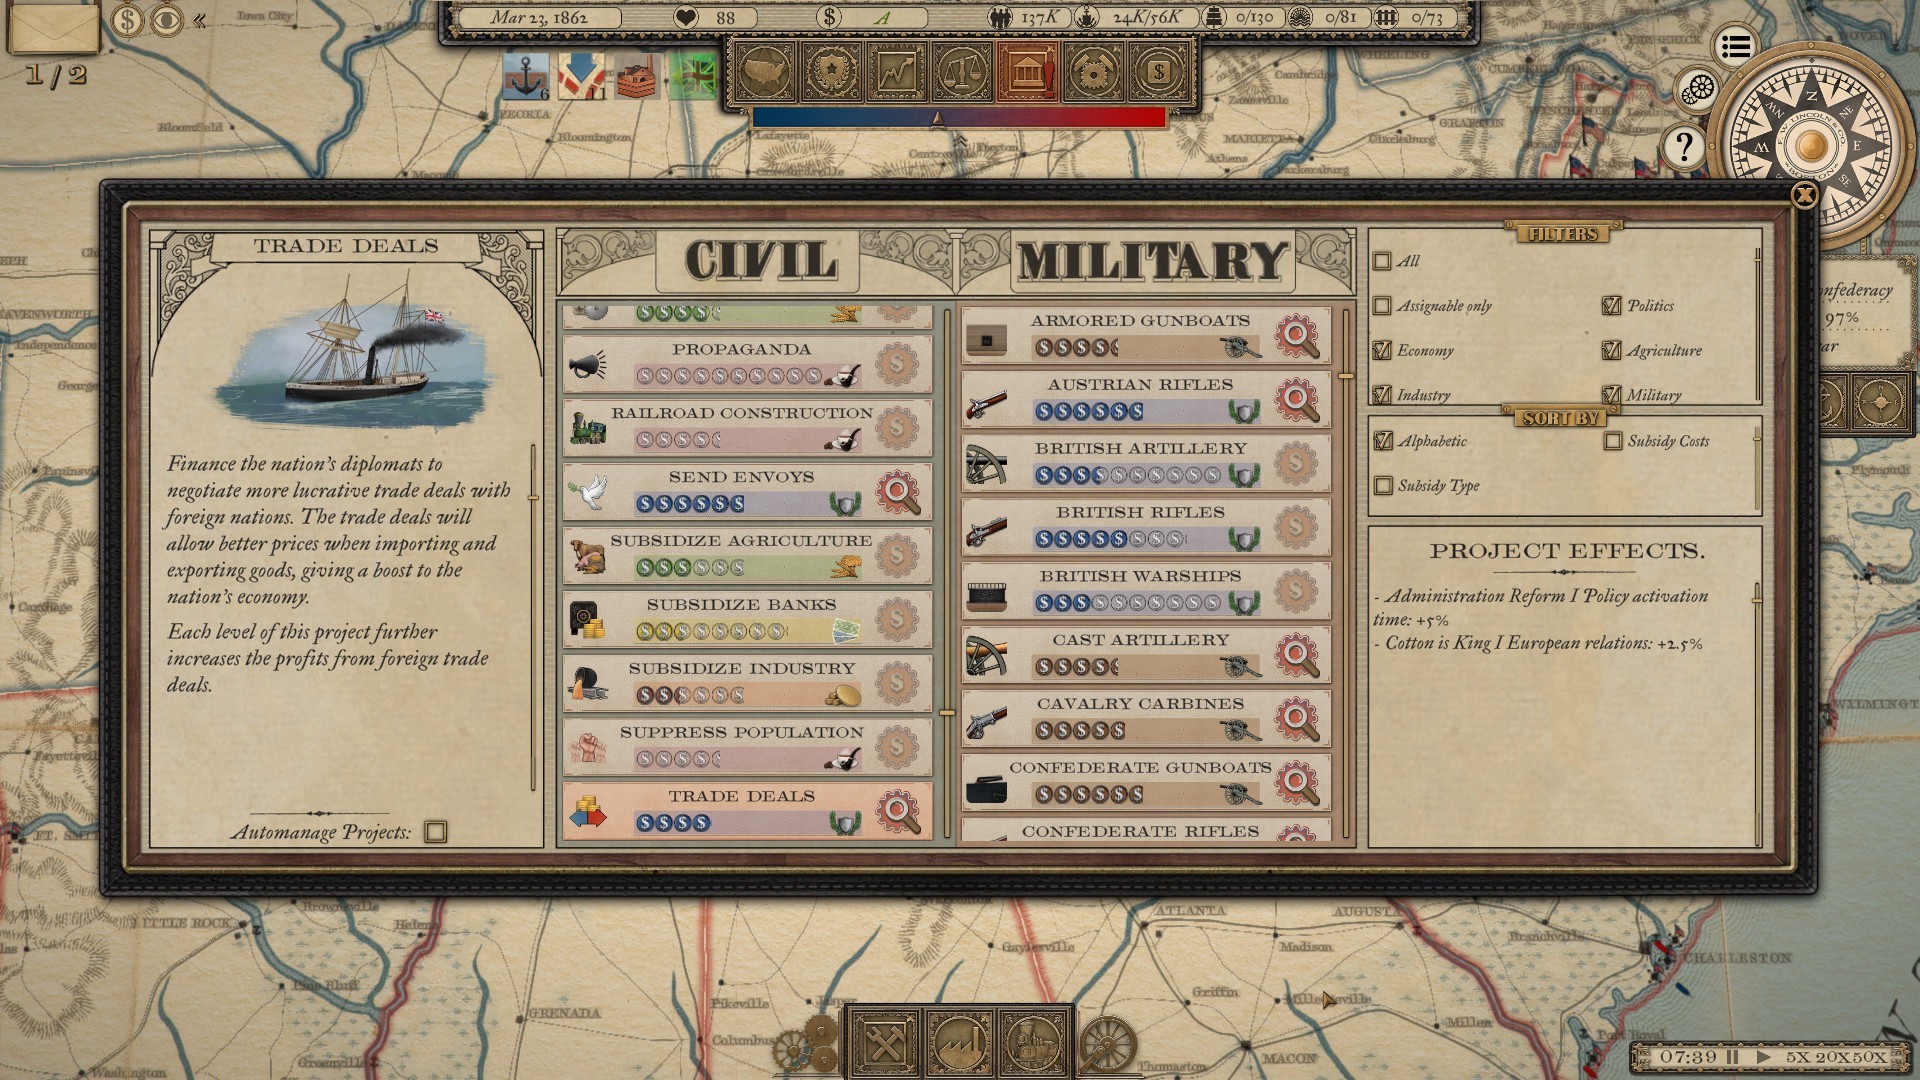 Grand Tactician: The Civil War (1861-1865) - screenshot 8